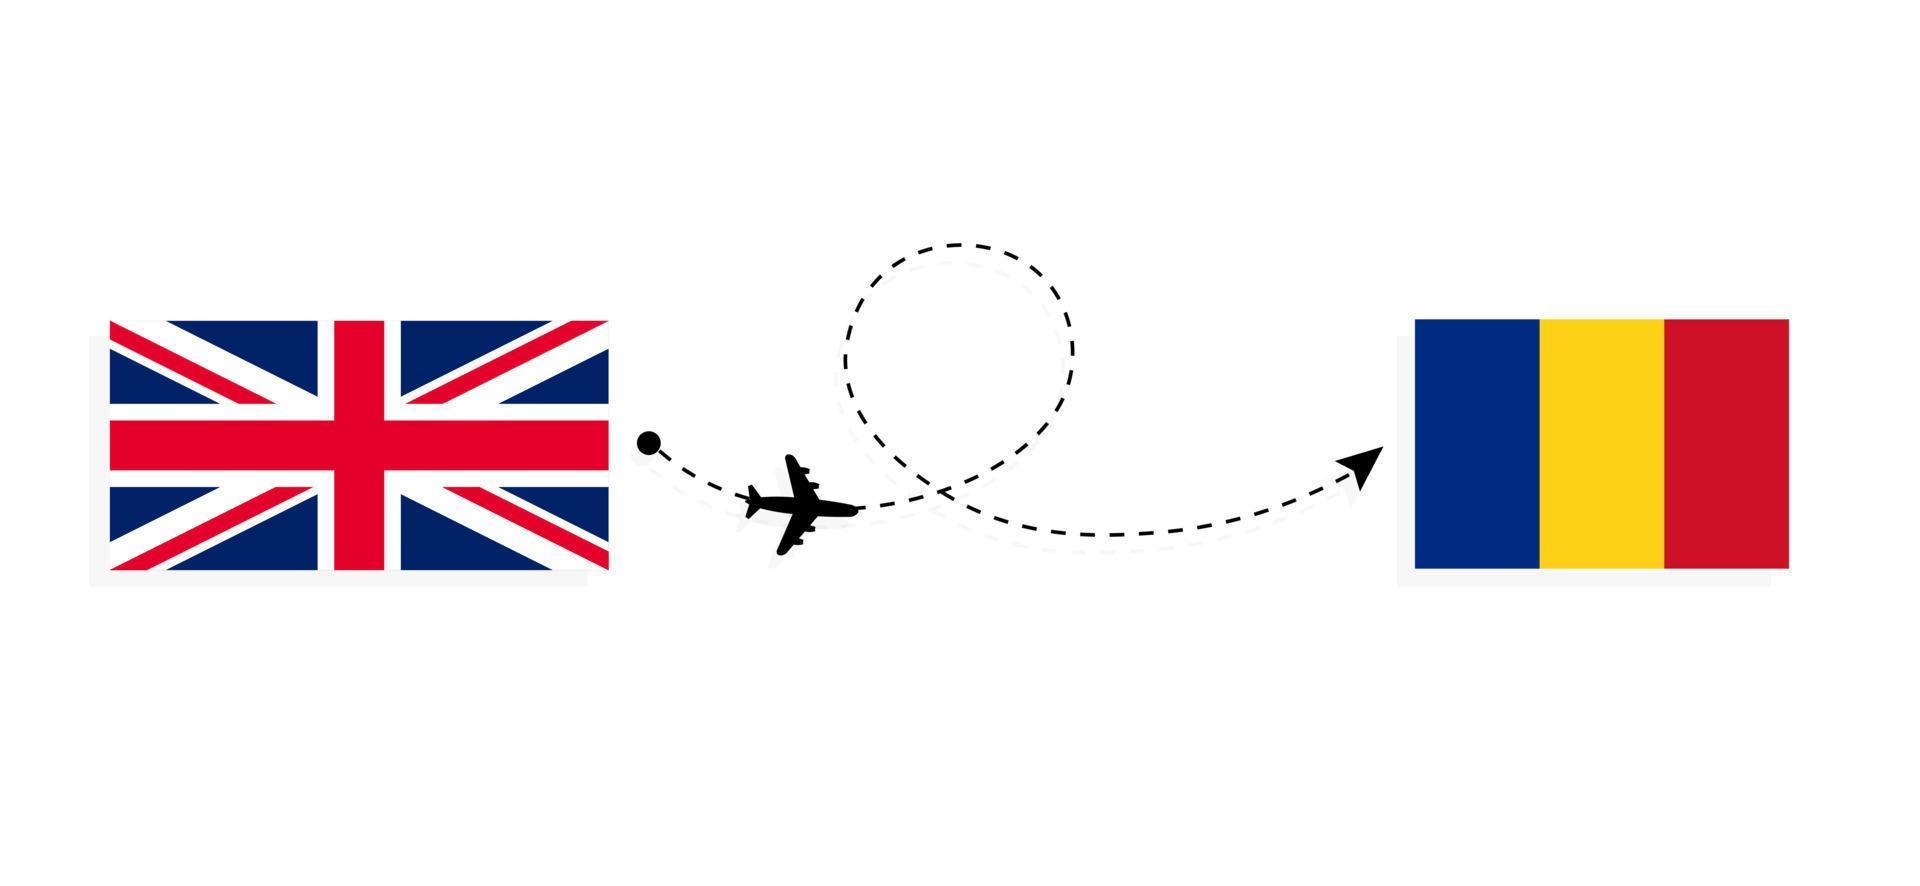 flyg och resor från Storbritannien till Rumänien med passagerarflygplan vektor